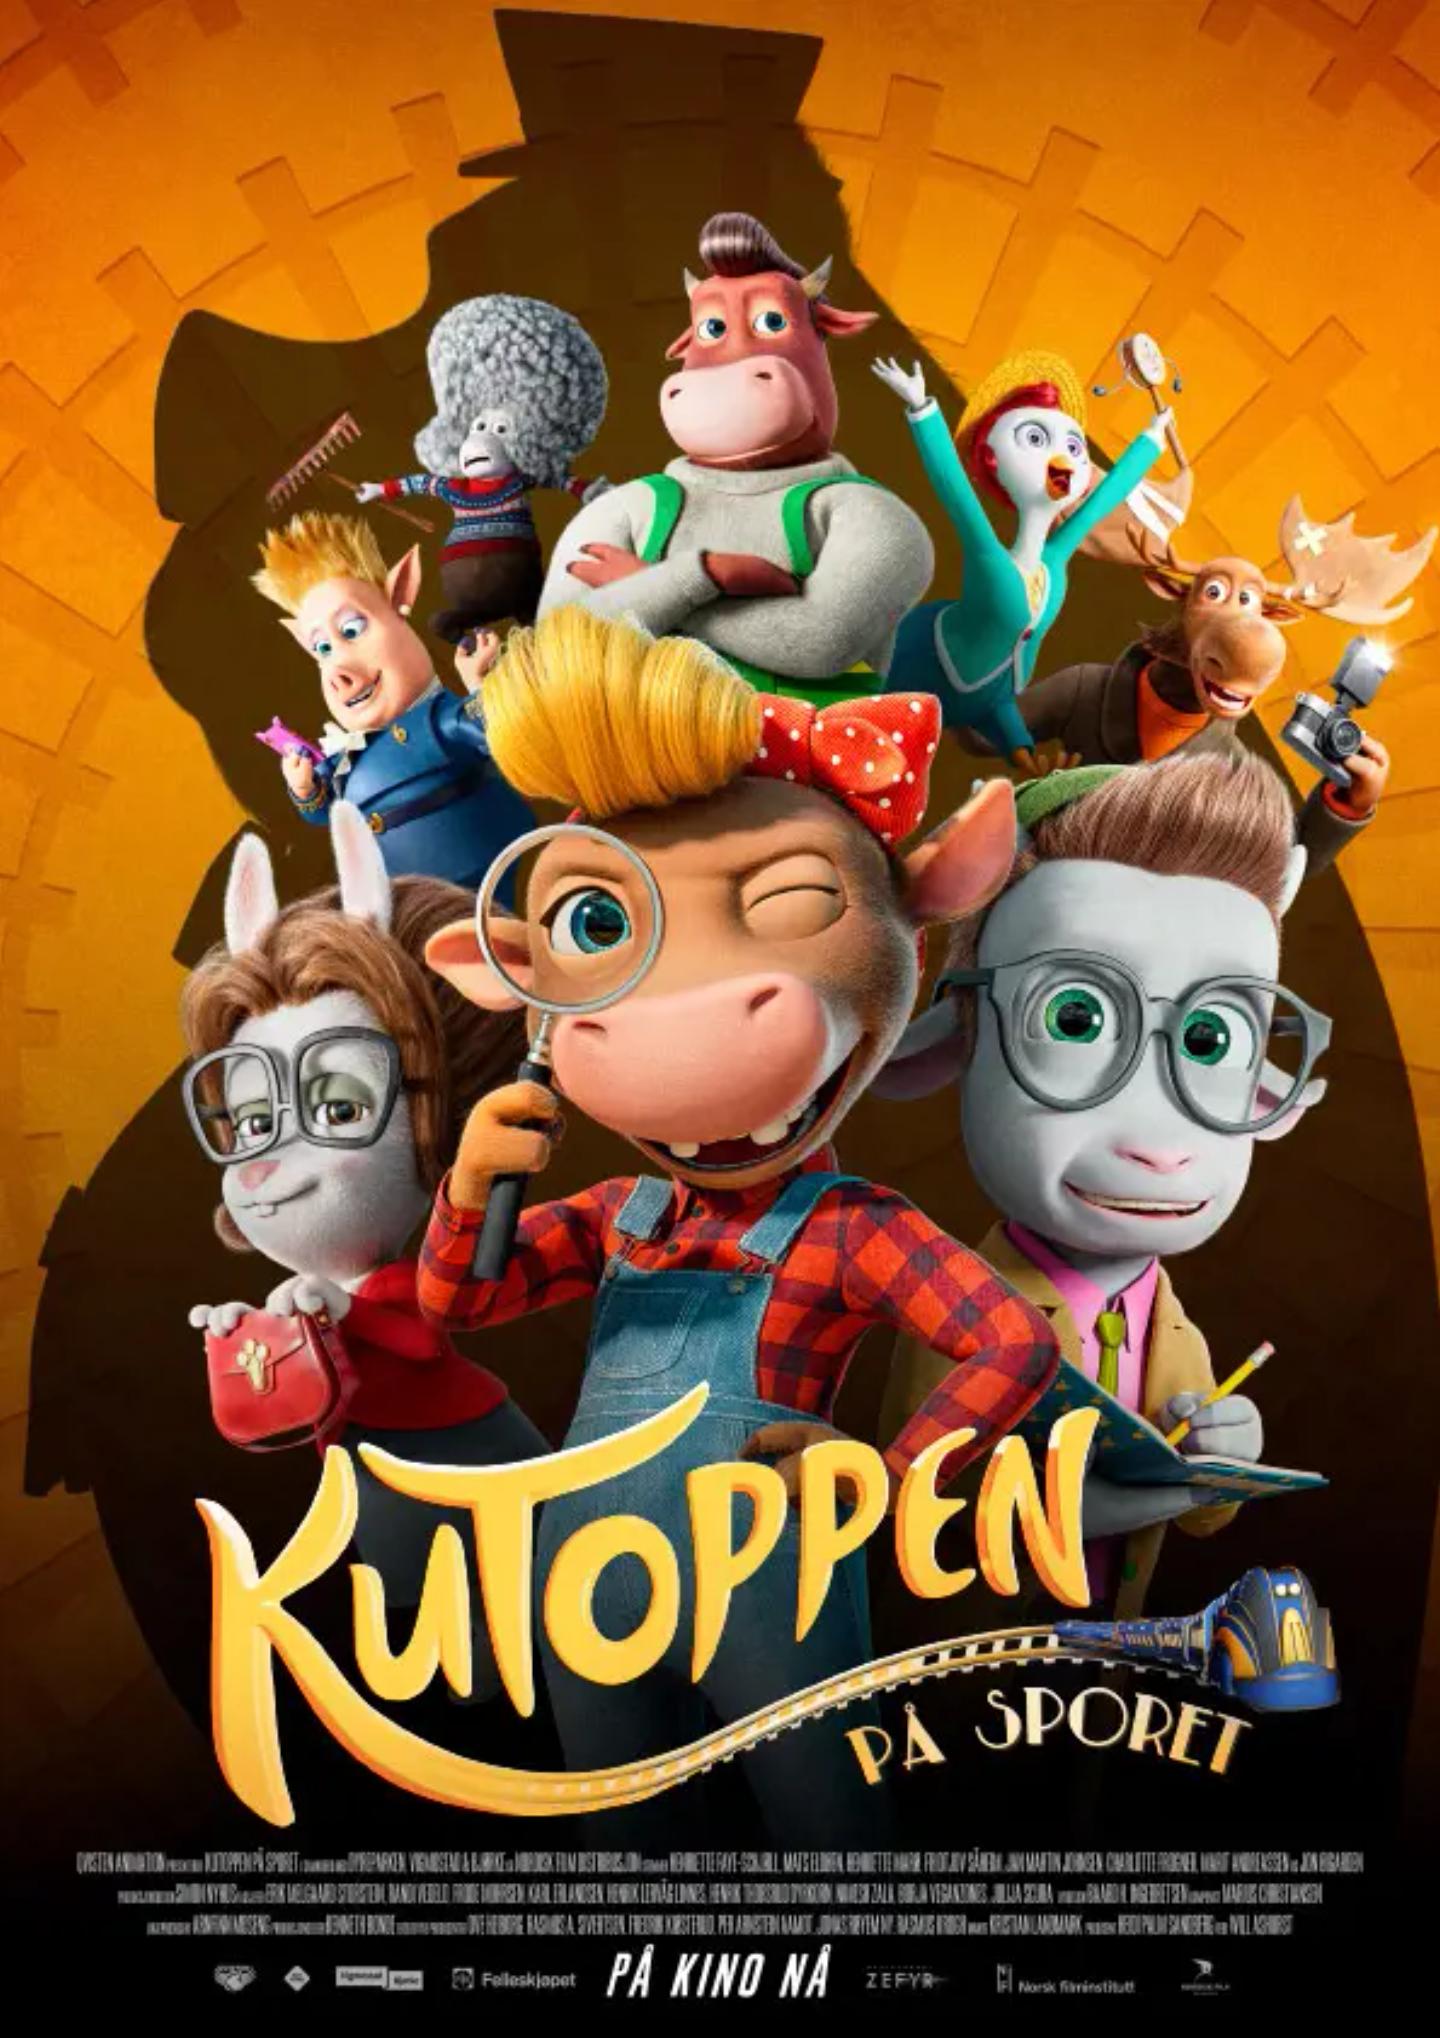 Plakat for 'KuToppen - På sporet'